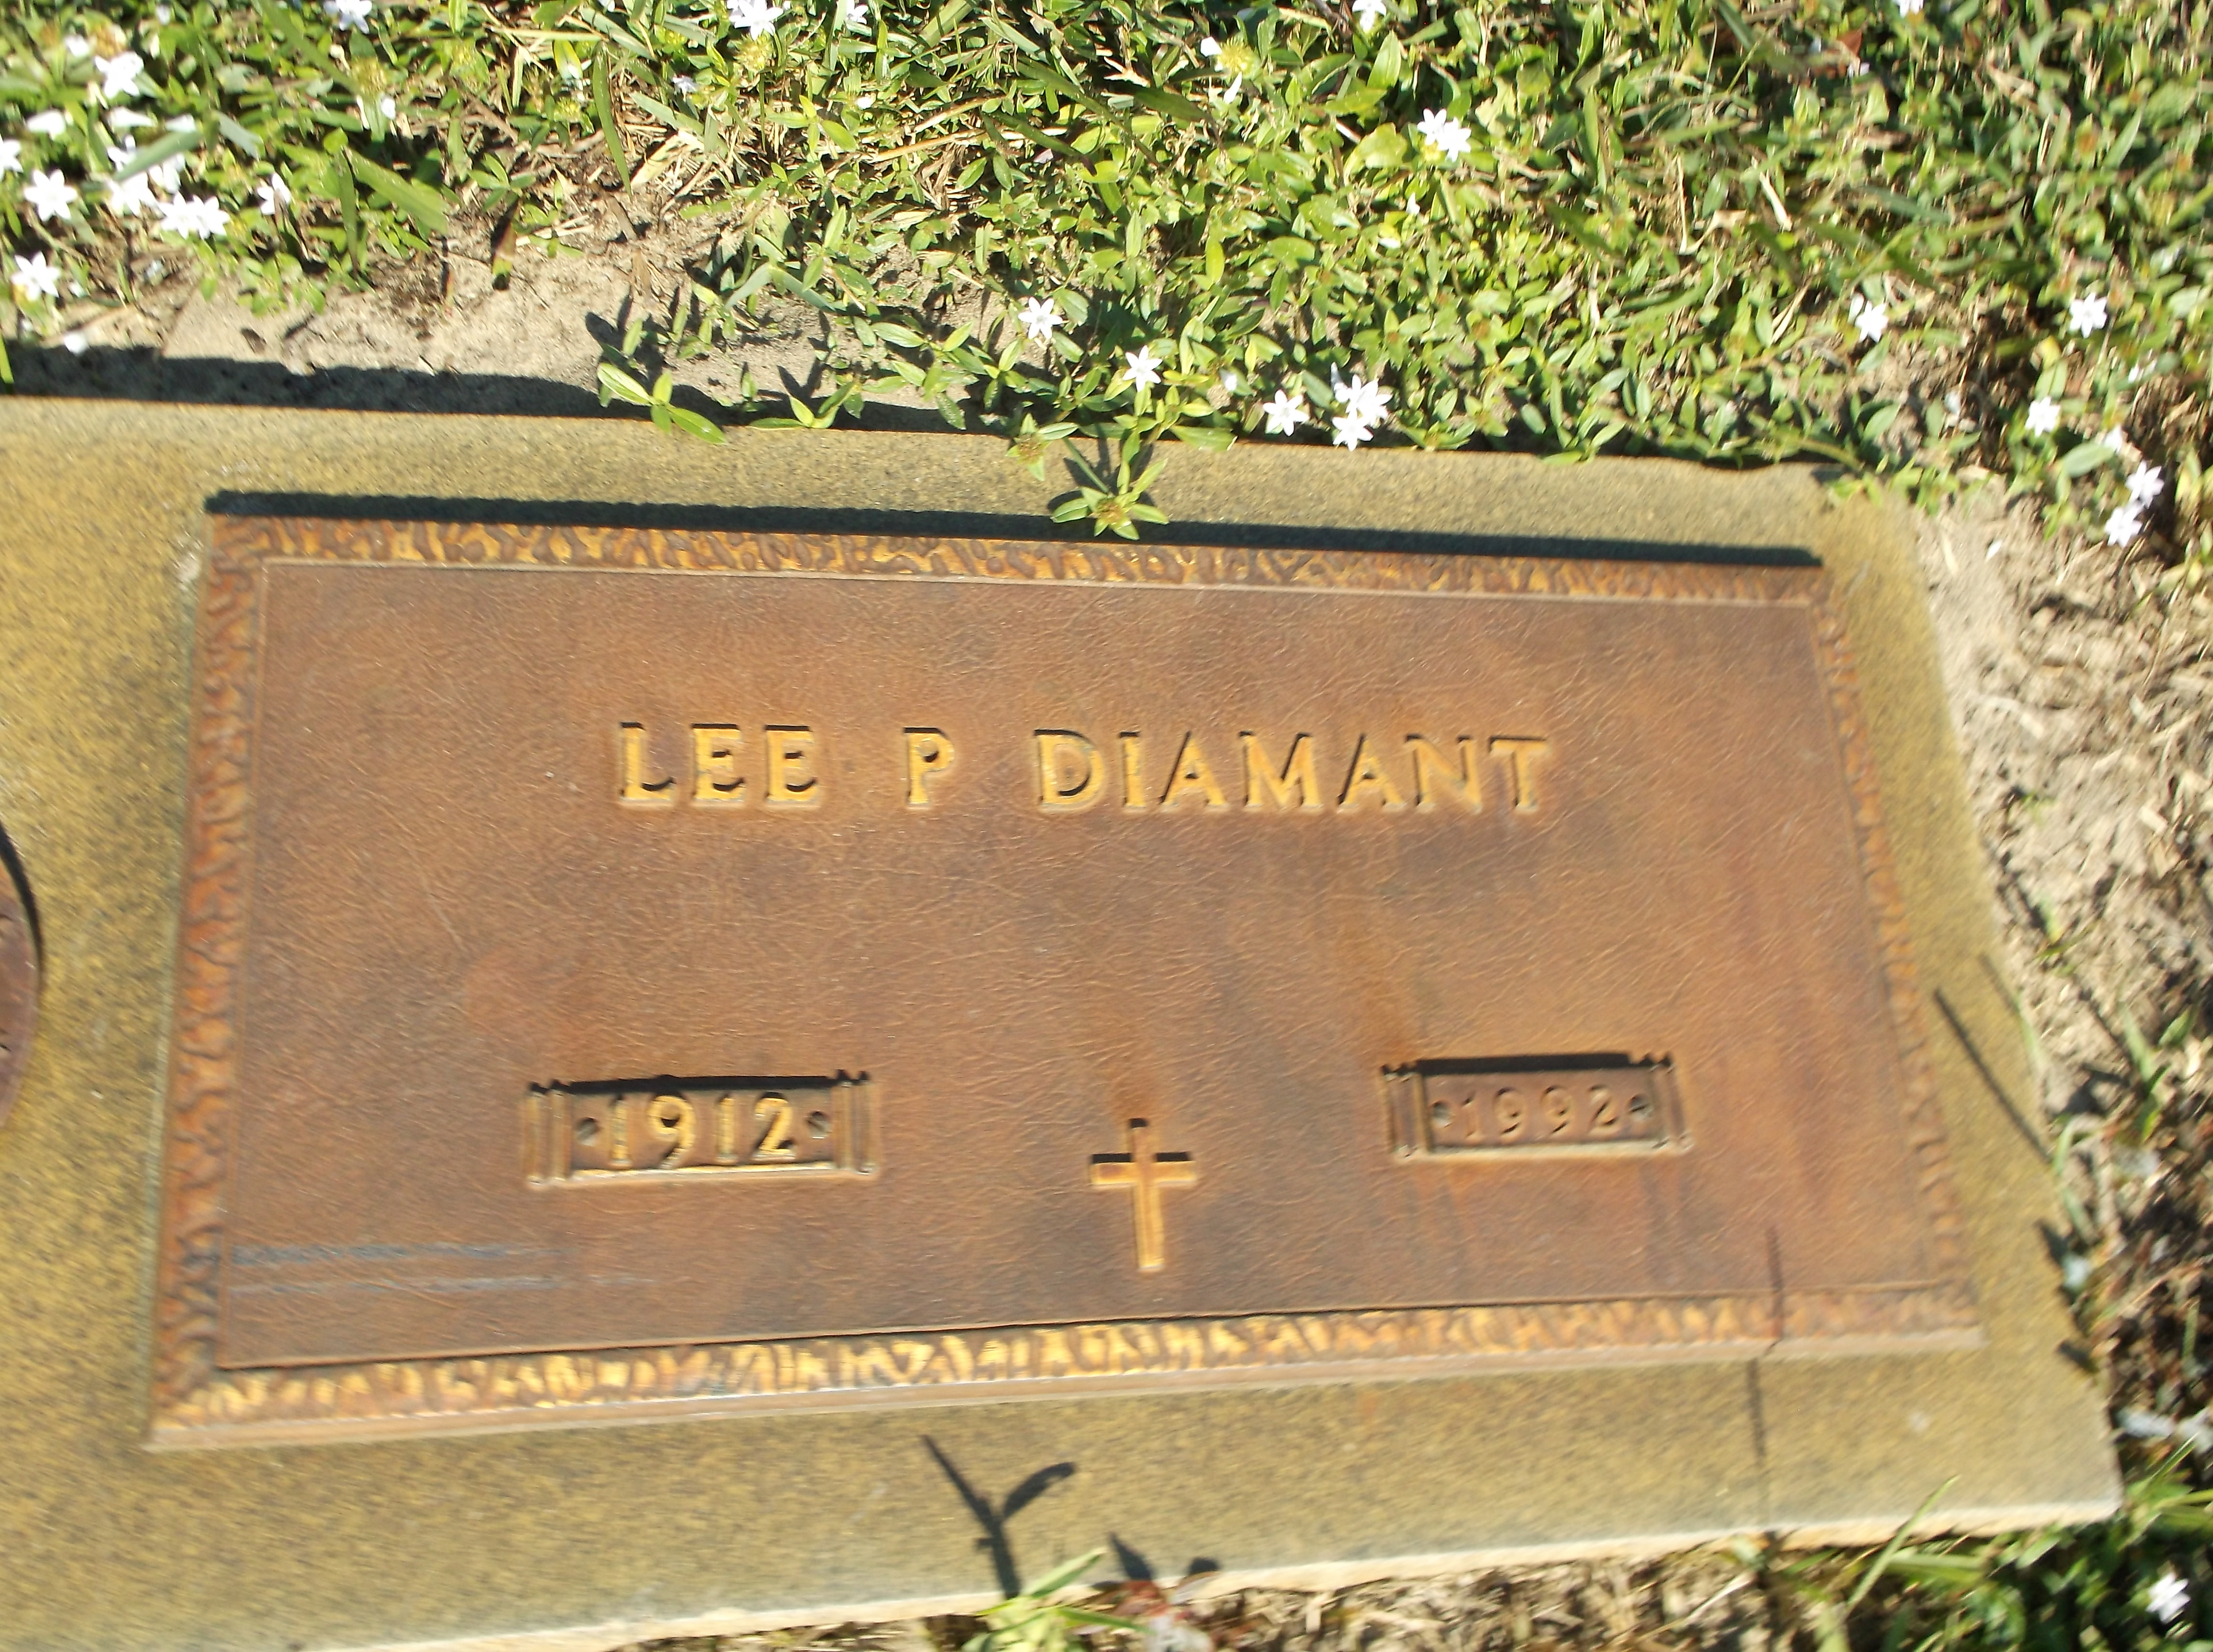 Lee P Diamant